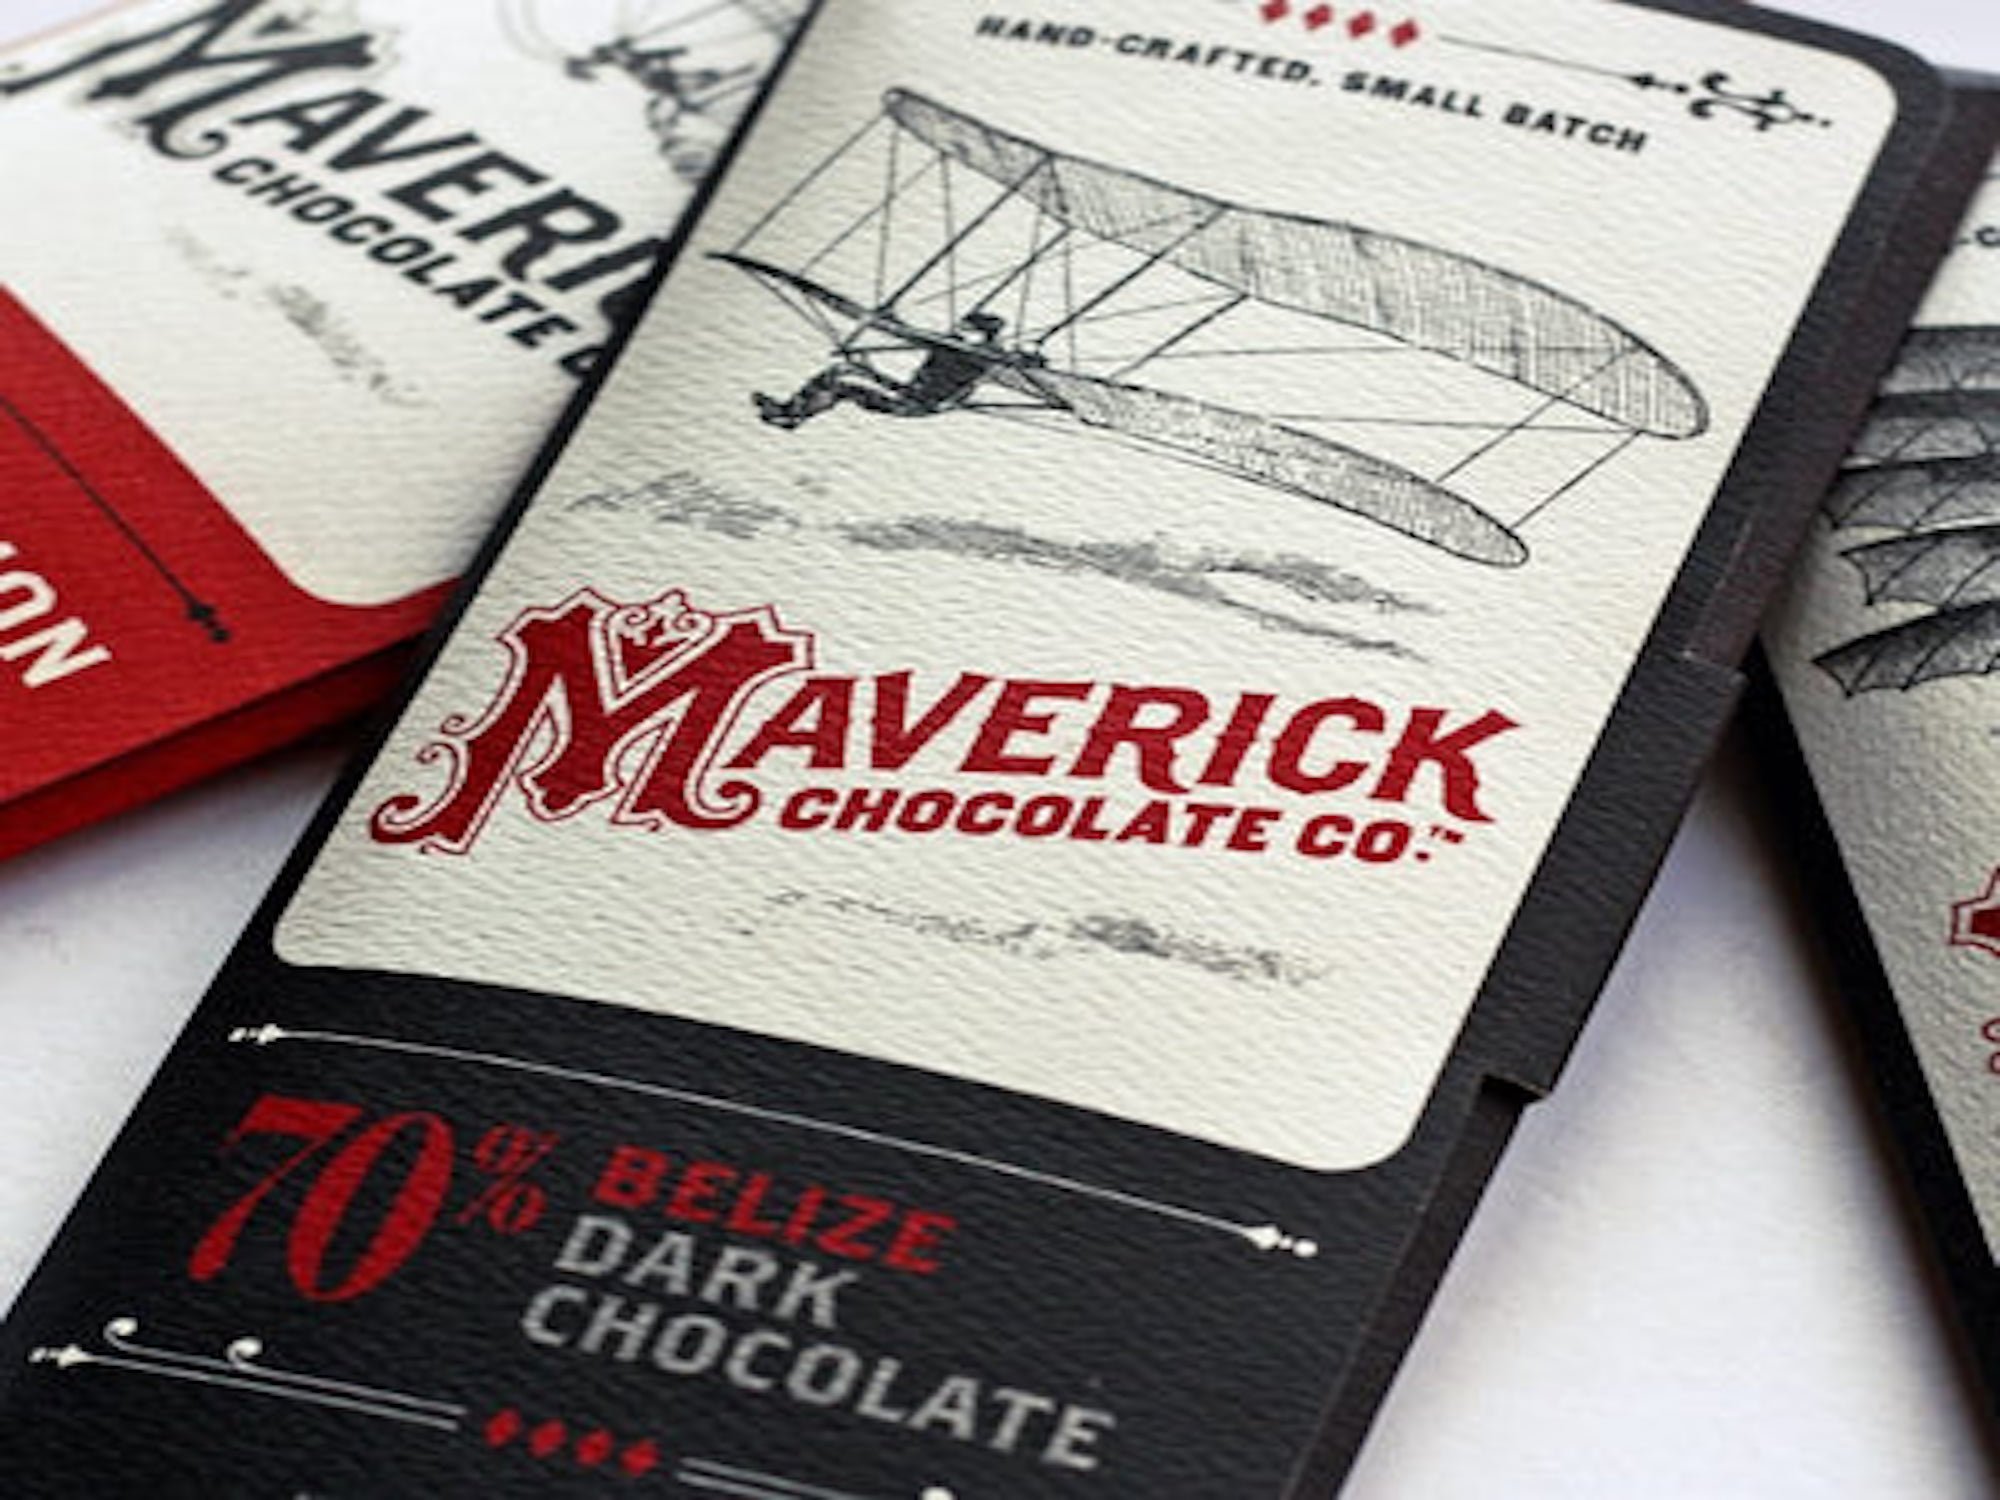 Maverick Chocolate Co. in Cincinnati